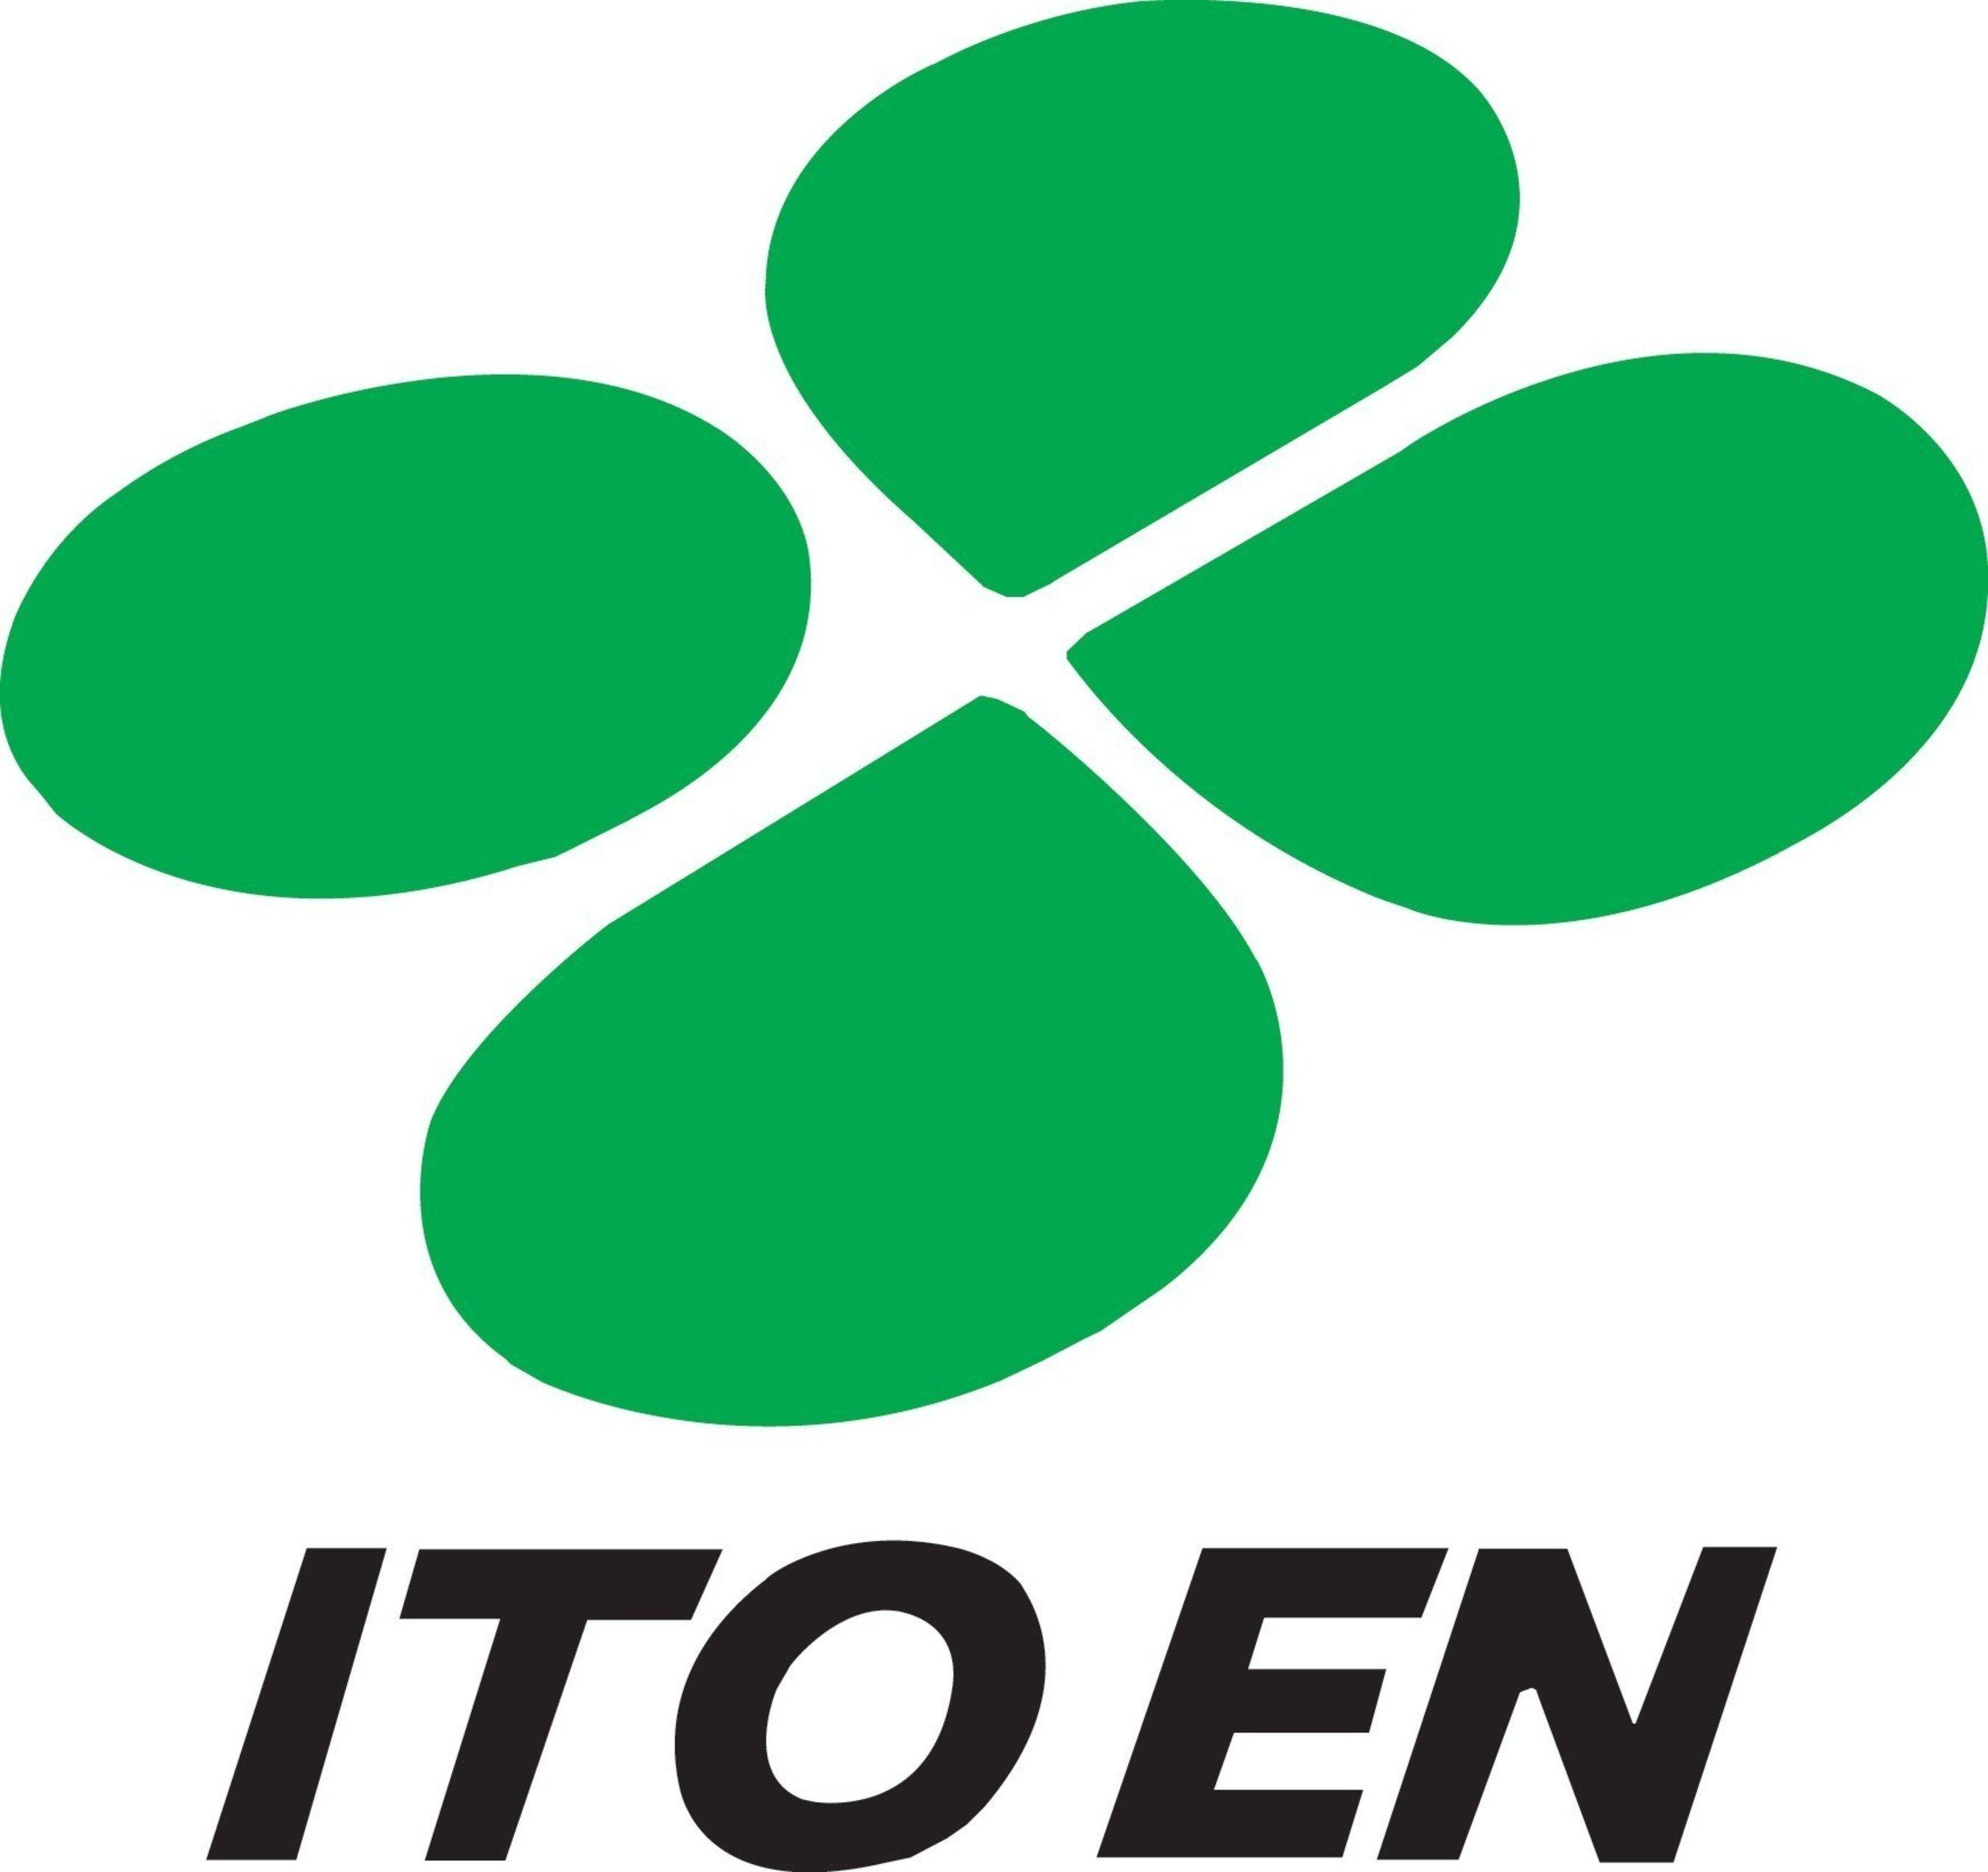 Ito Logo - ITO EN Makes FORTUNE Magazine's 